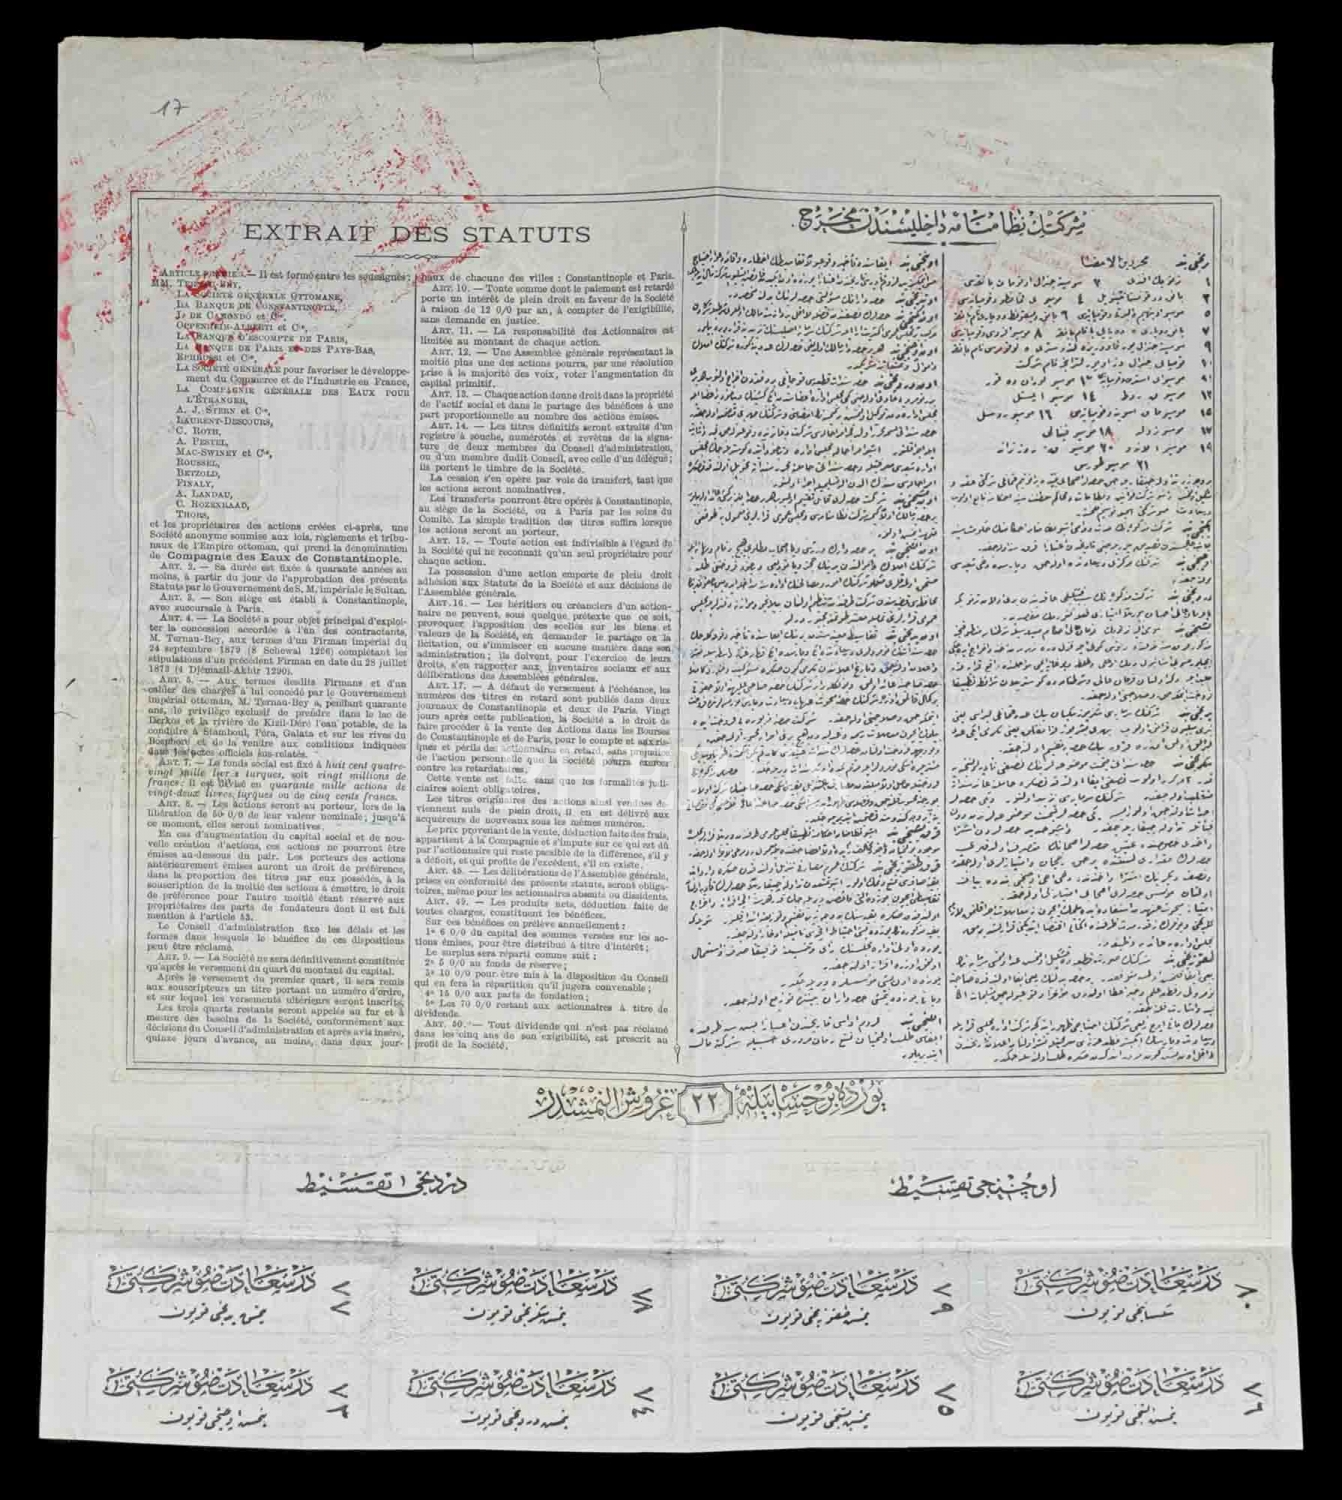 Dersaadet Memba Suları Osmanlı Anonim Şirketi, 1884 tarihli bir paylık hisse senedi...